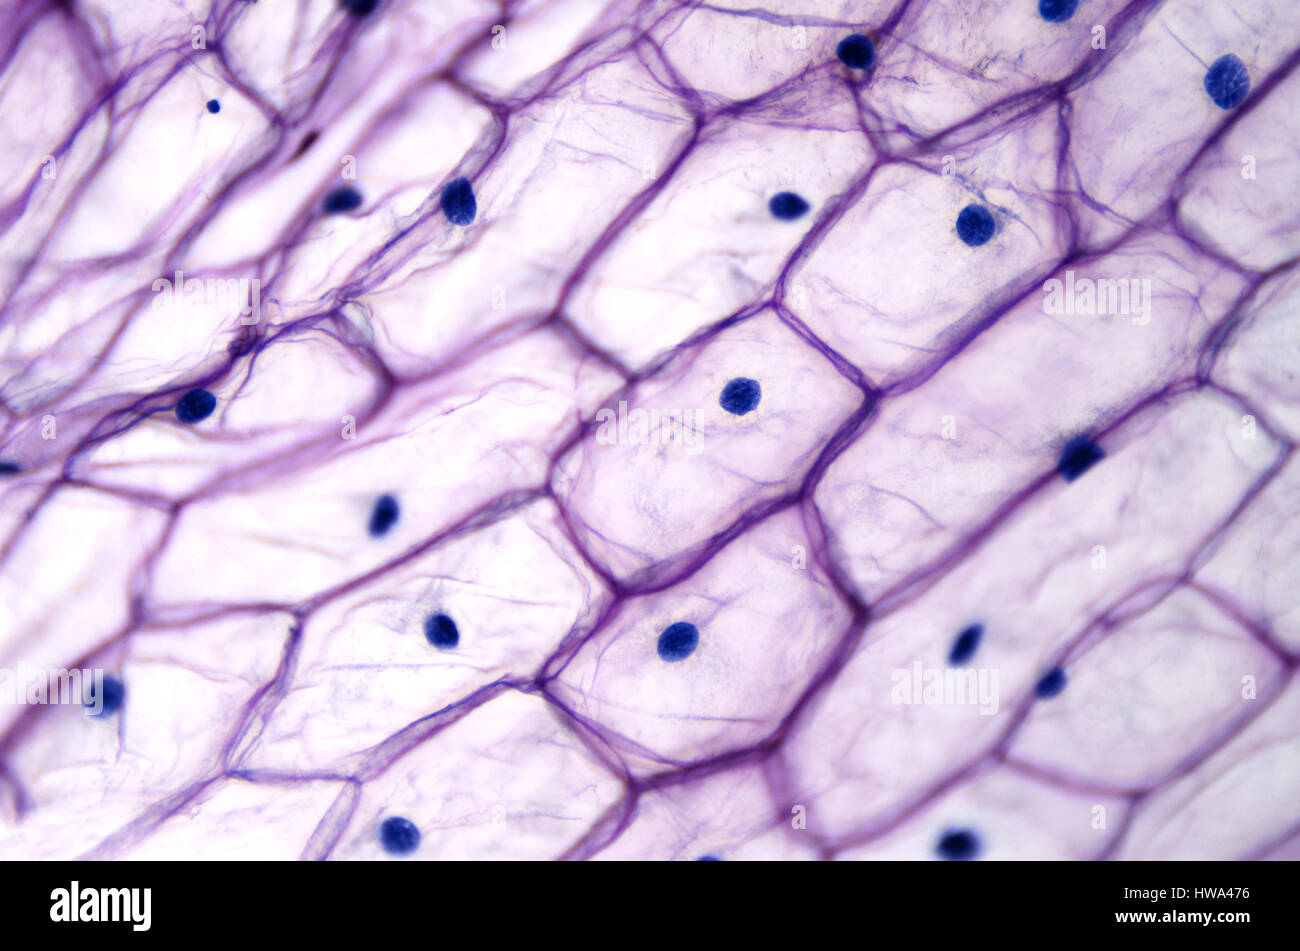 Onion epidermide con grandi cellule sotto microscopio luminoso. Cancellare le cellule epidermiche di una cipolla, Allium cepa, in un singolo strato. Foto Stock